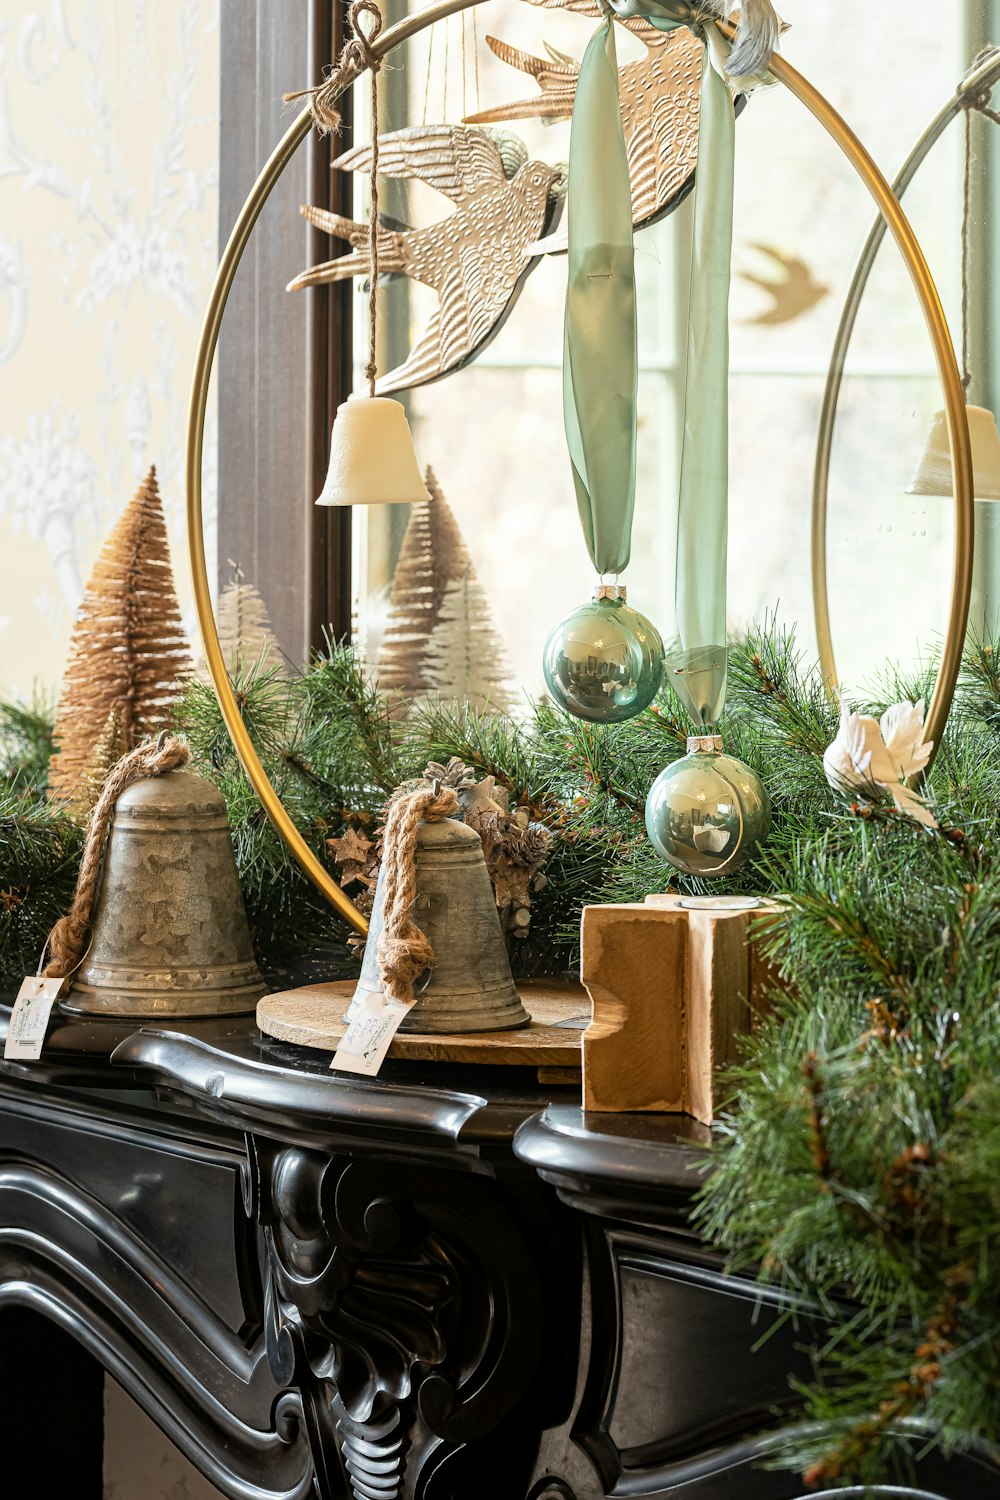 Un manto decorado con decoraciones navideñas y campanas